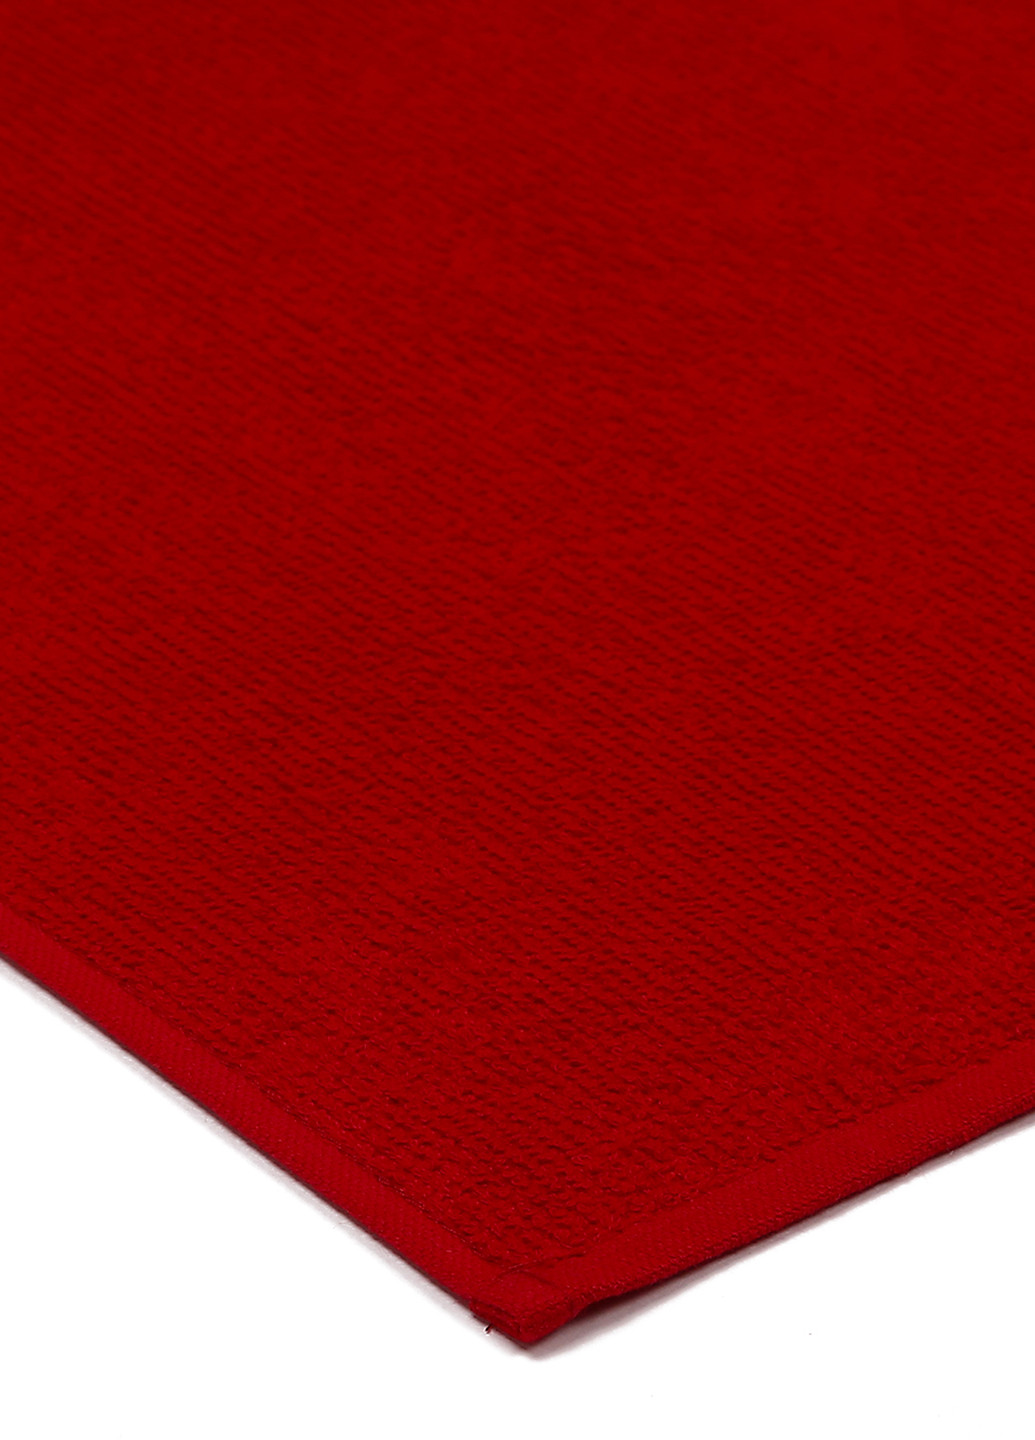 Maisonette полотенце (2 шт.), 40х60 см полоска красный производство - Турция